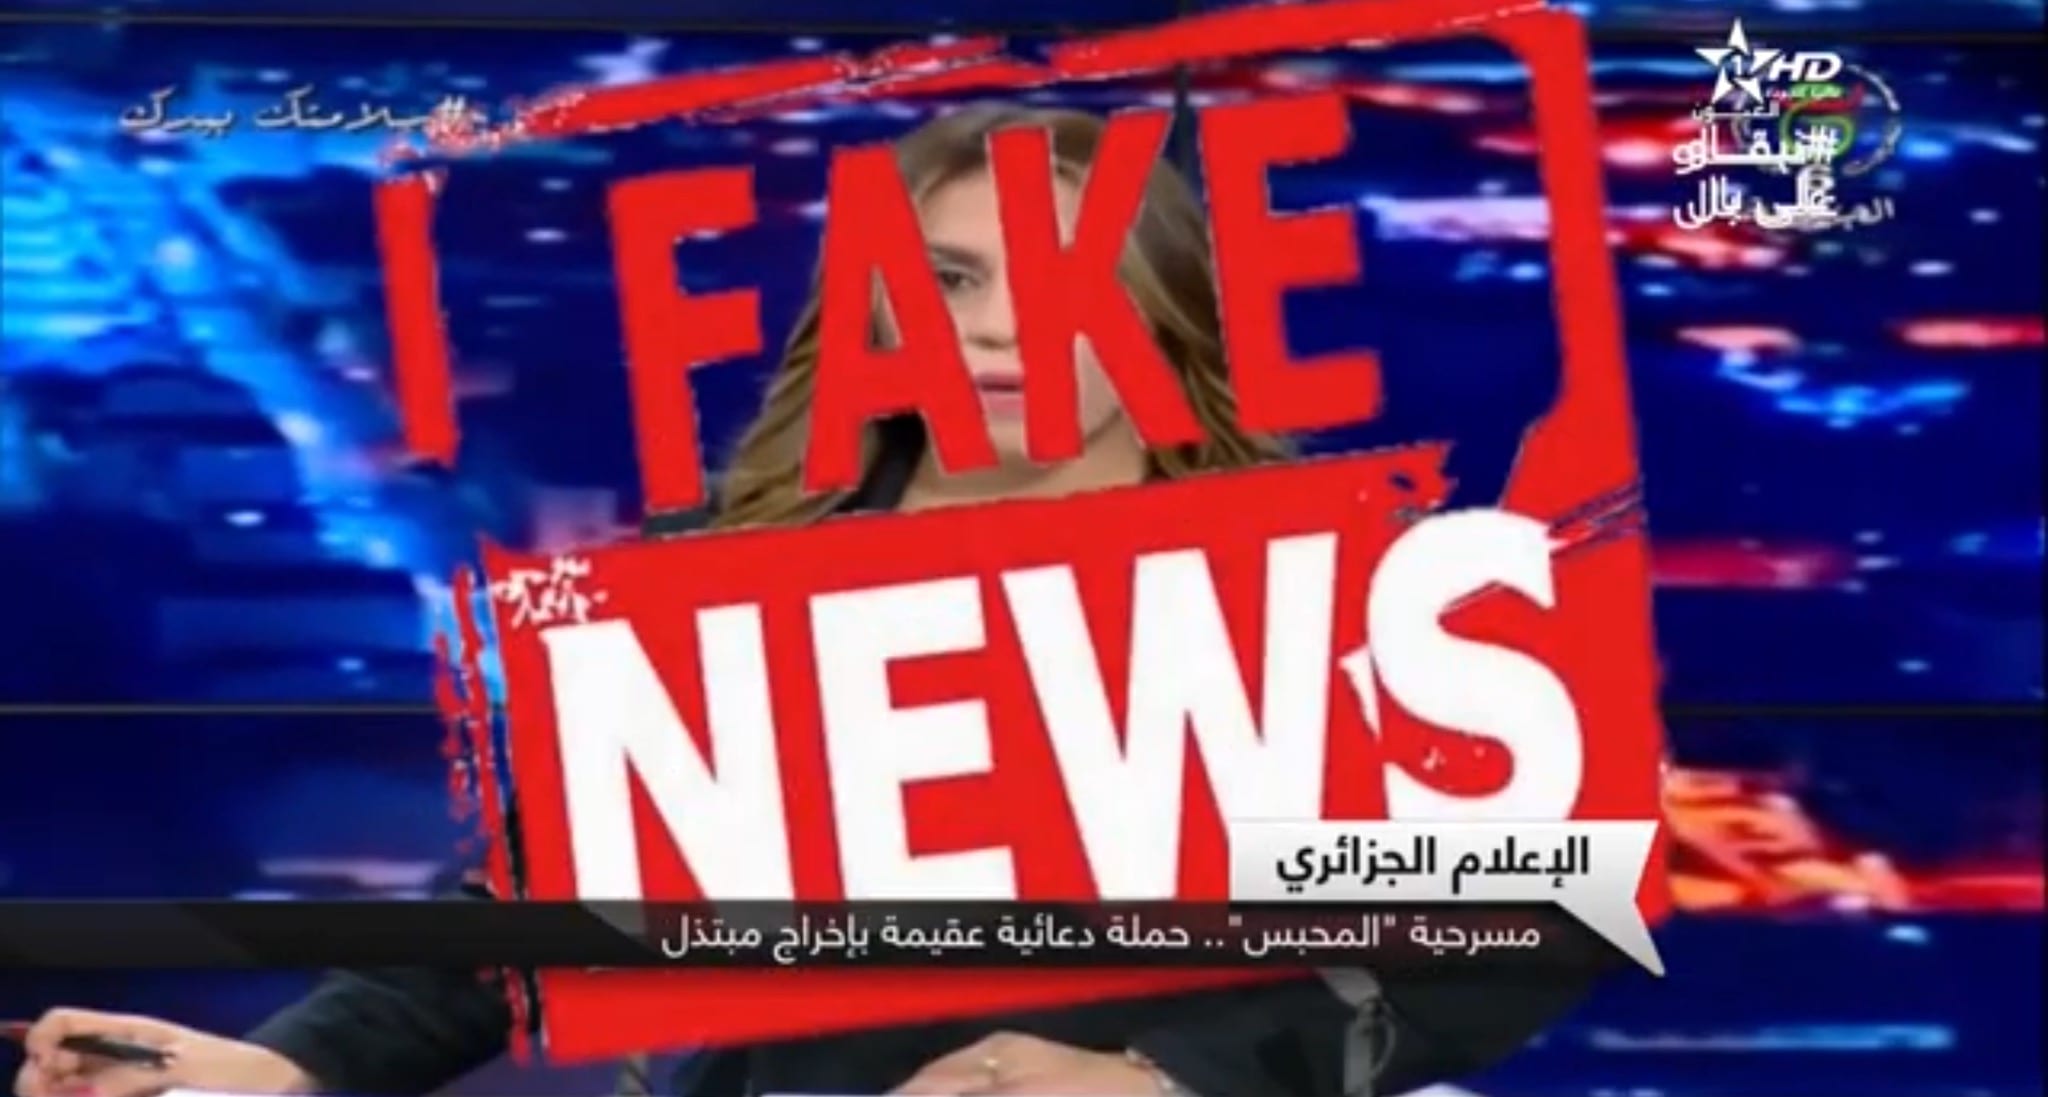 شاهد . تقرير ناري لقناة العيون يفضح أكاذيب التلفزيون الجزائري